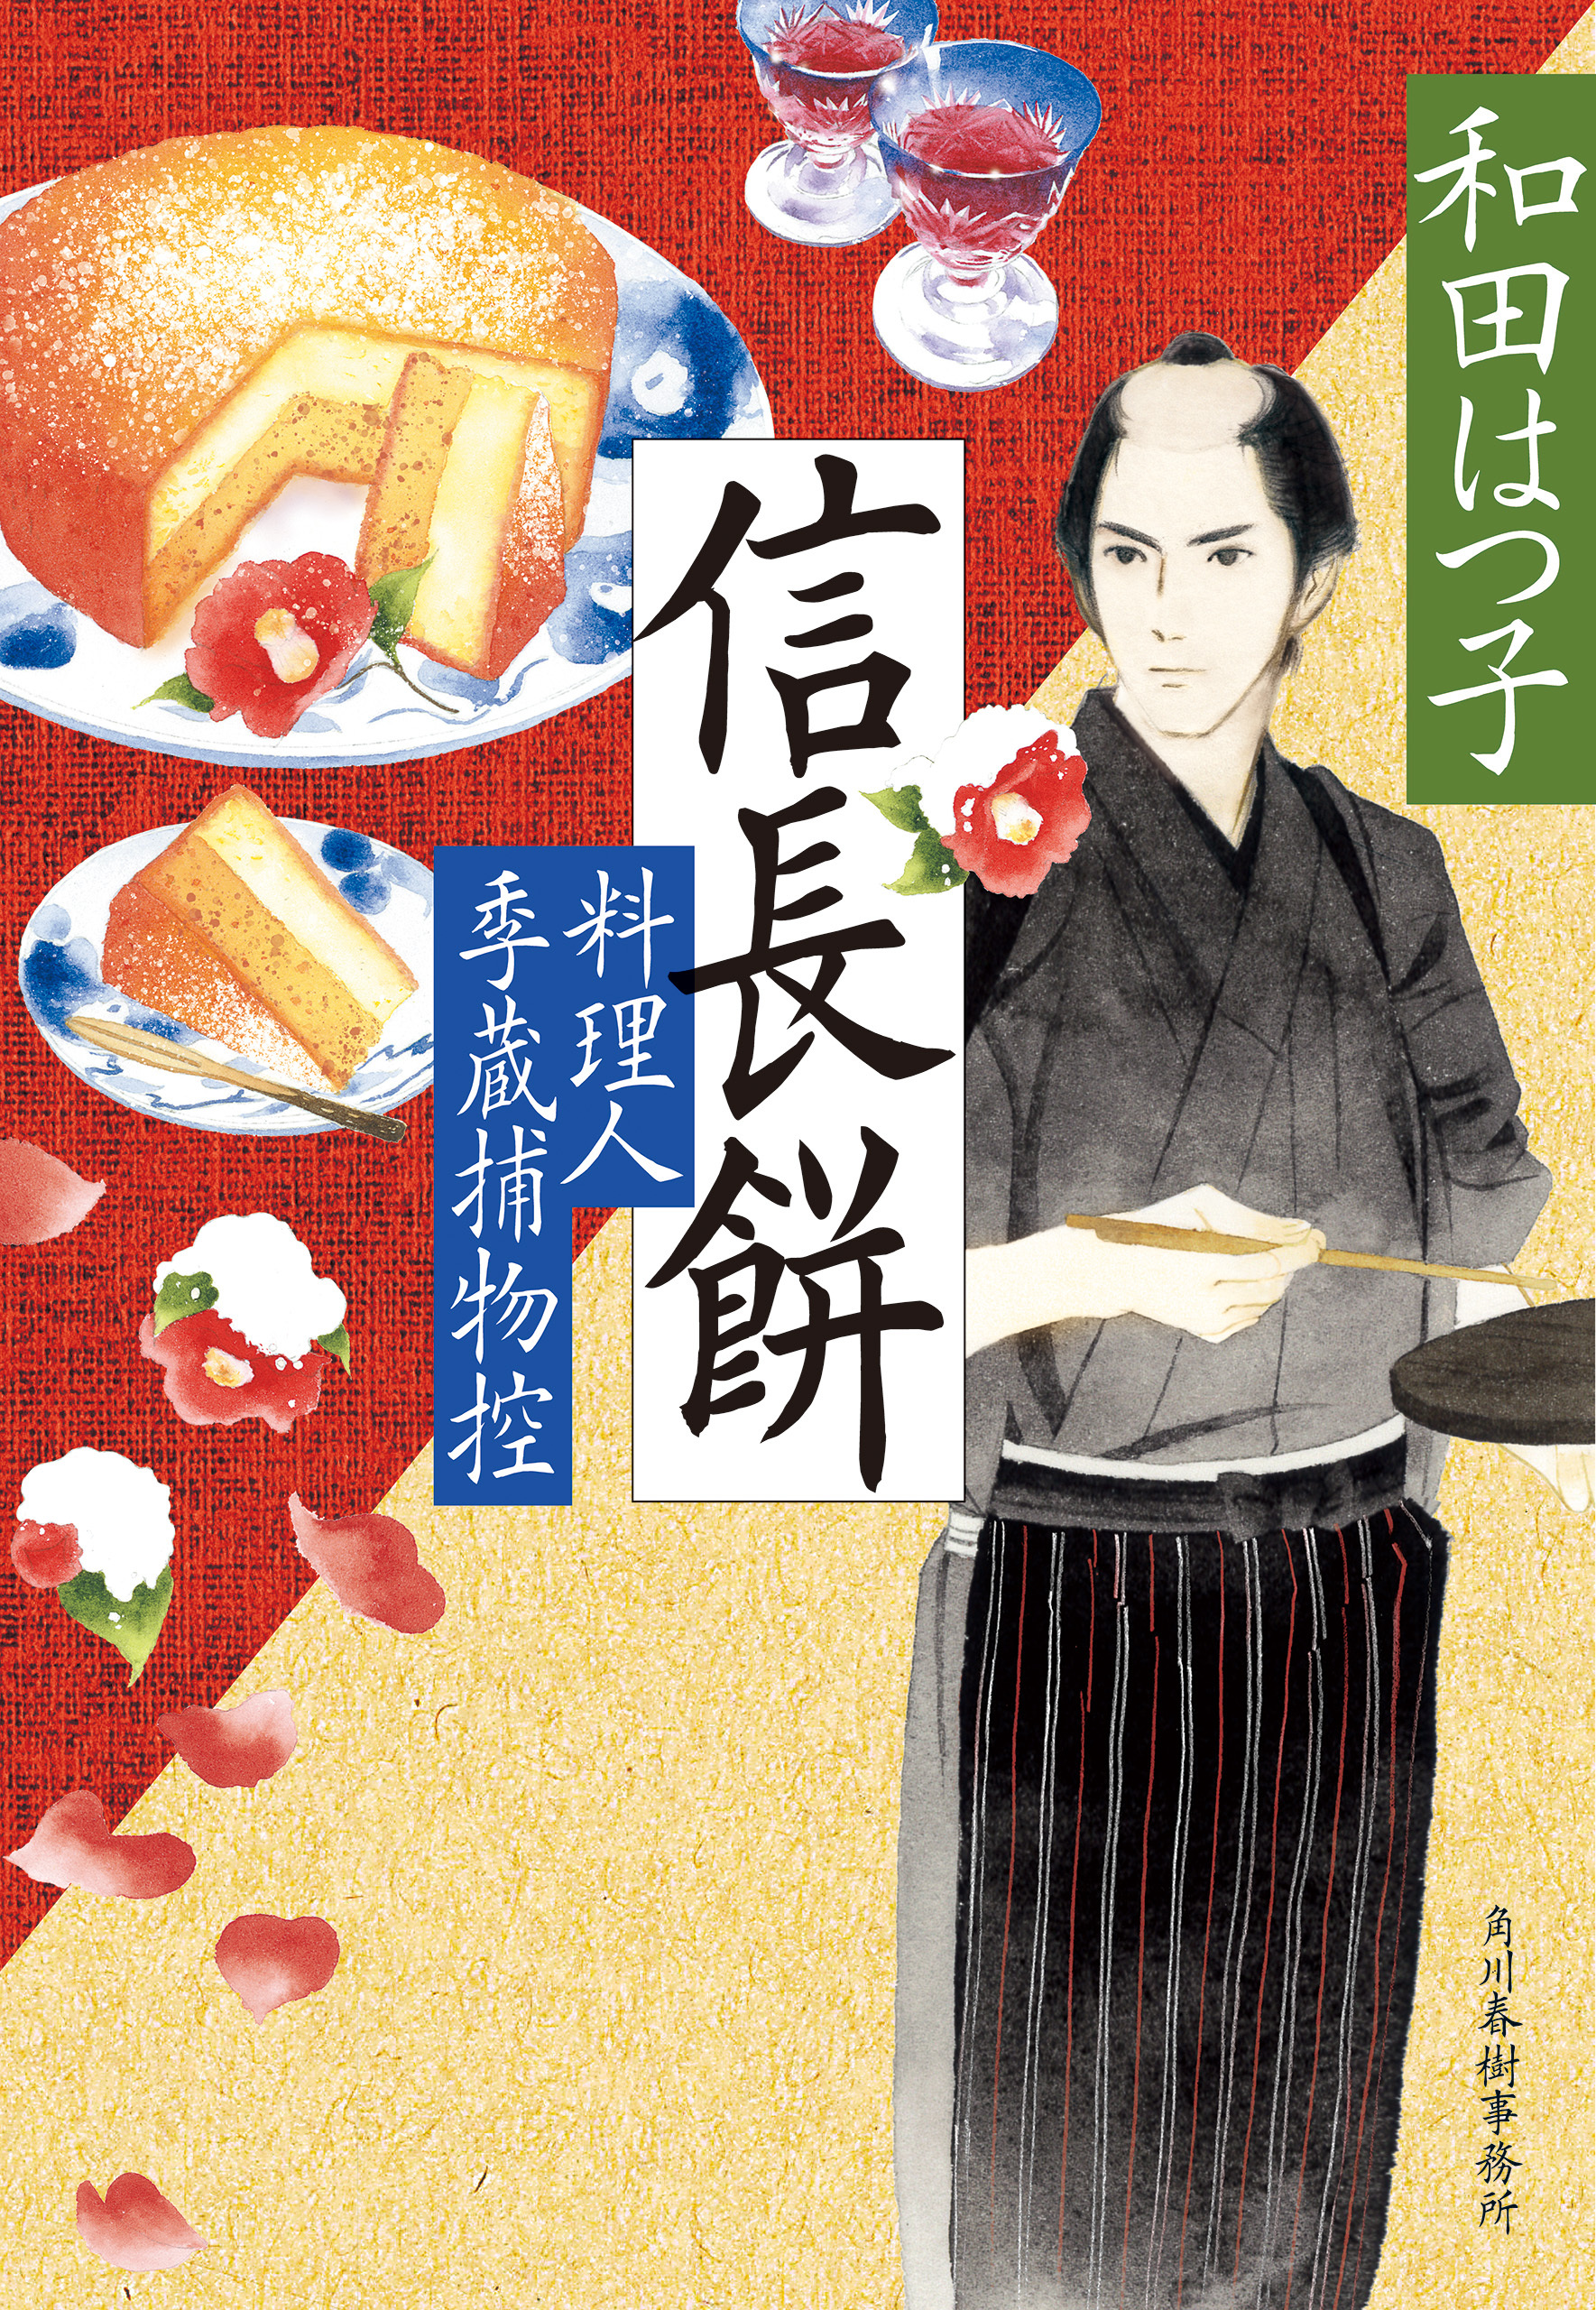 料理人季蔵捕物控45巻|和田はつ子|人気漫画を無料で試し読み・全巻お得 